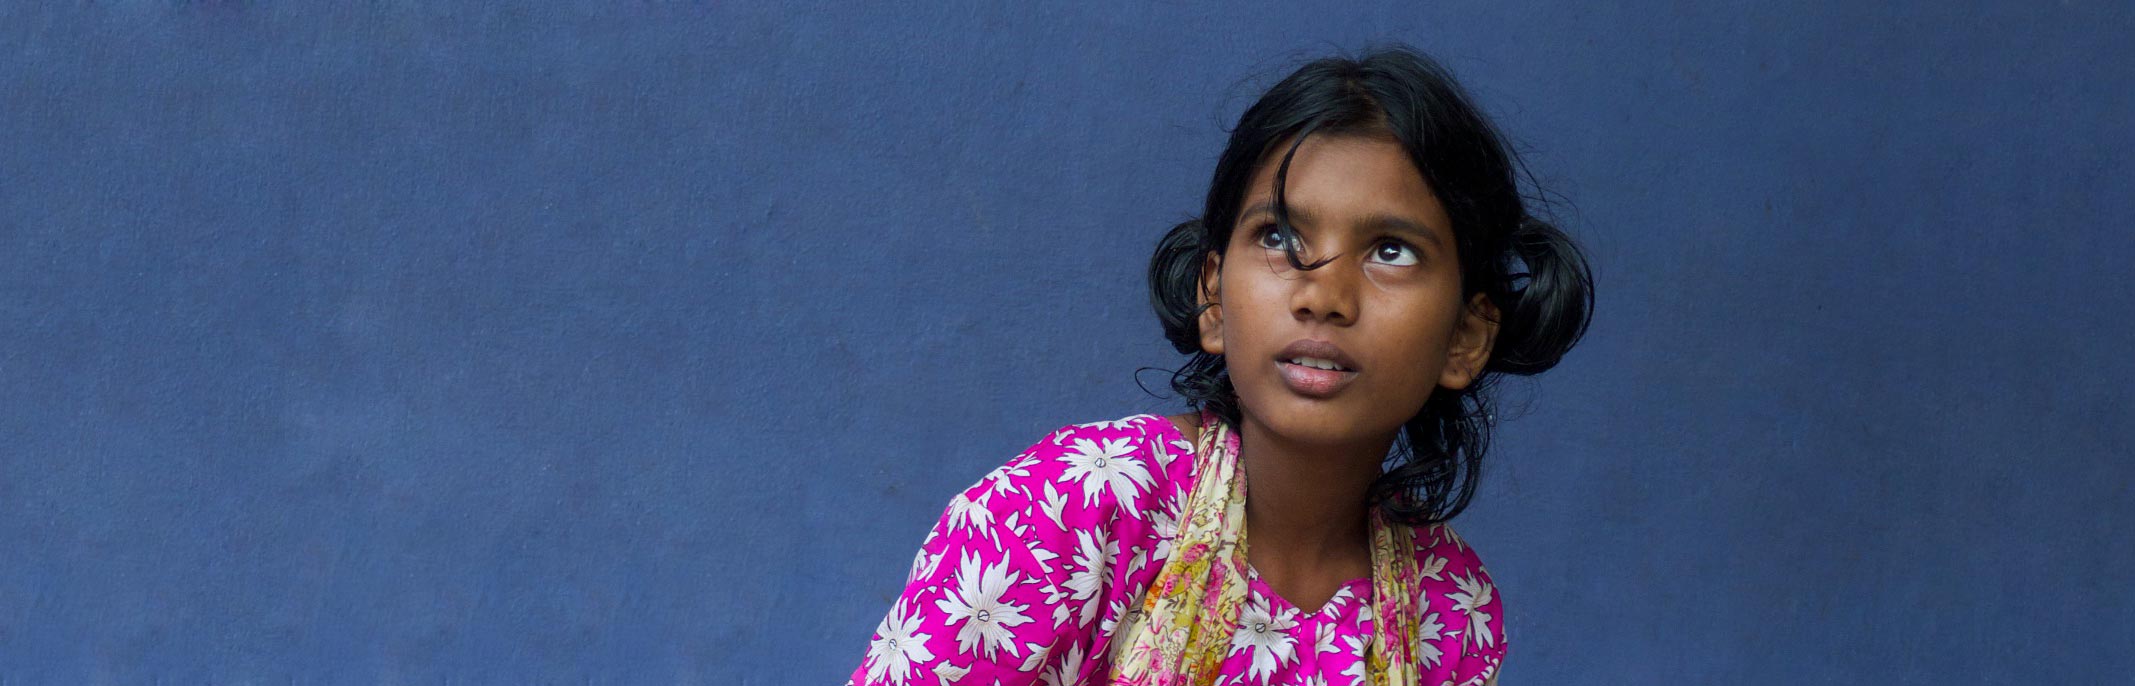 fille indienne devant un mur bleu, regardant vers le ciel